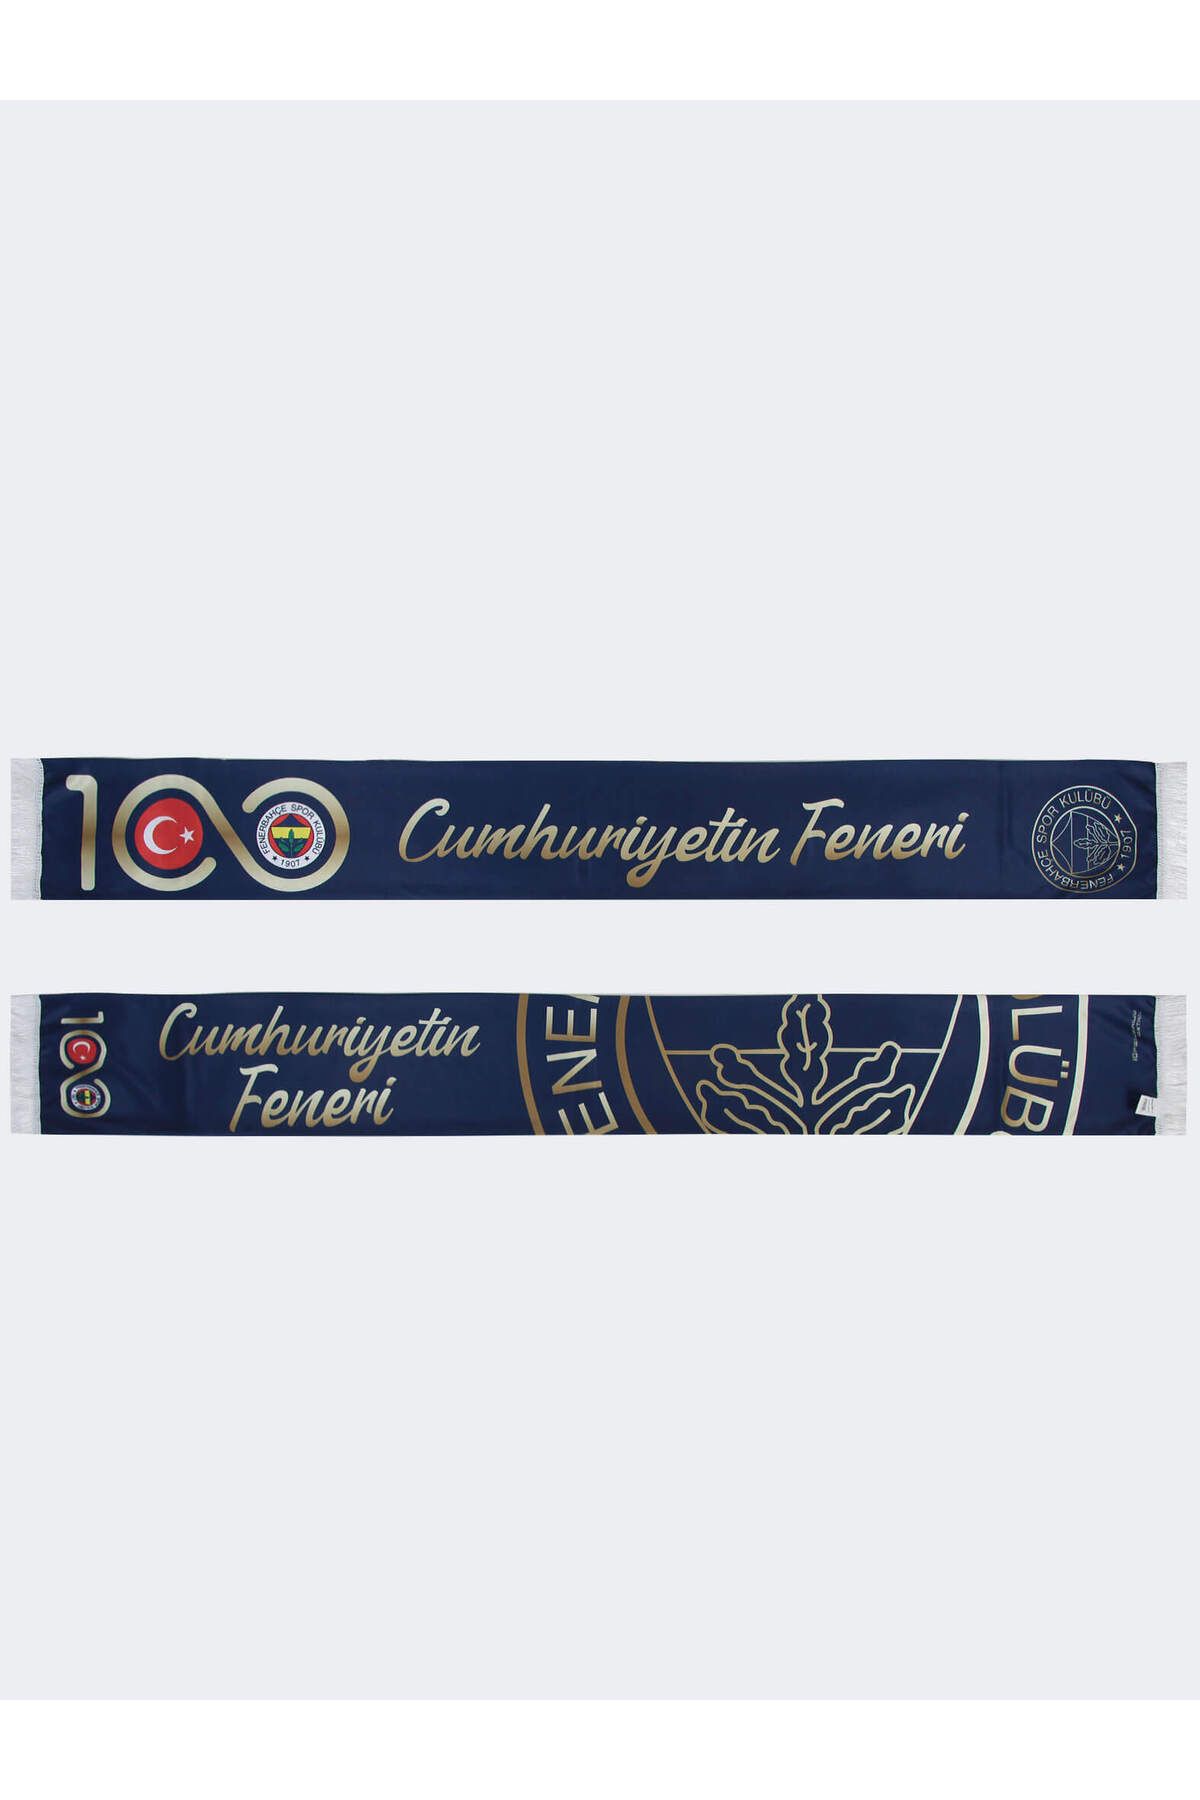 Fenerbahçe UNISEX CUMHURİYETİN FENERİ GOLD ŞAL